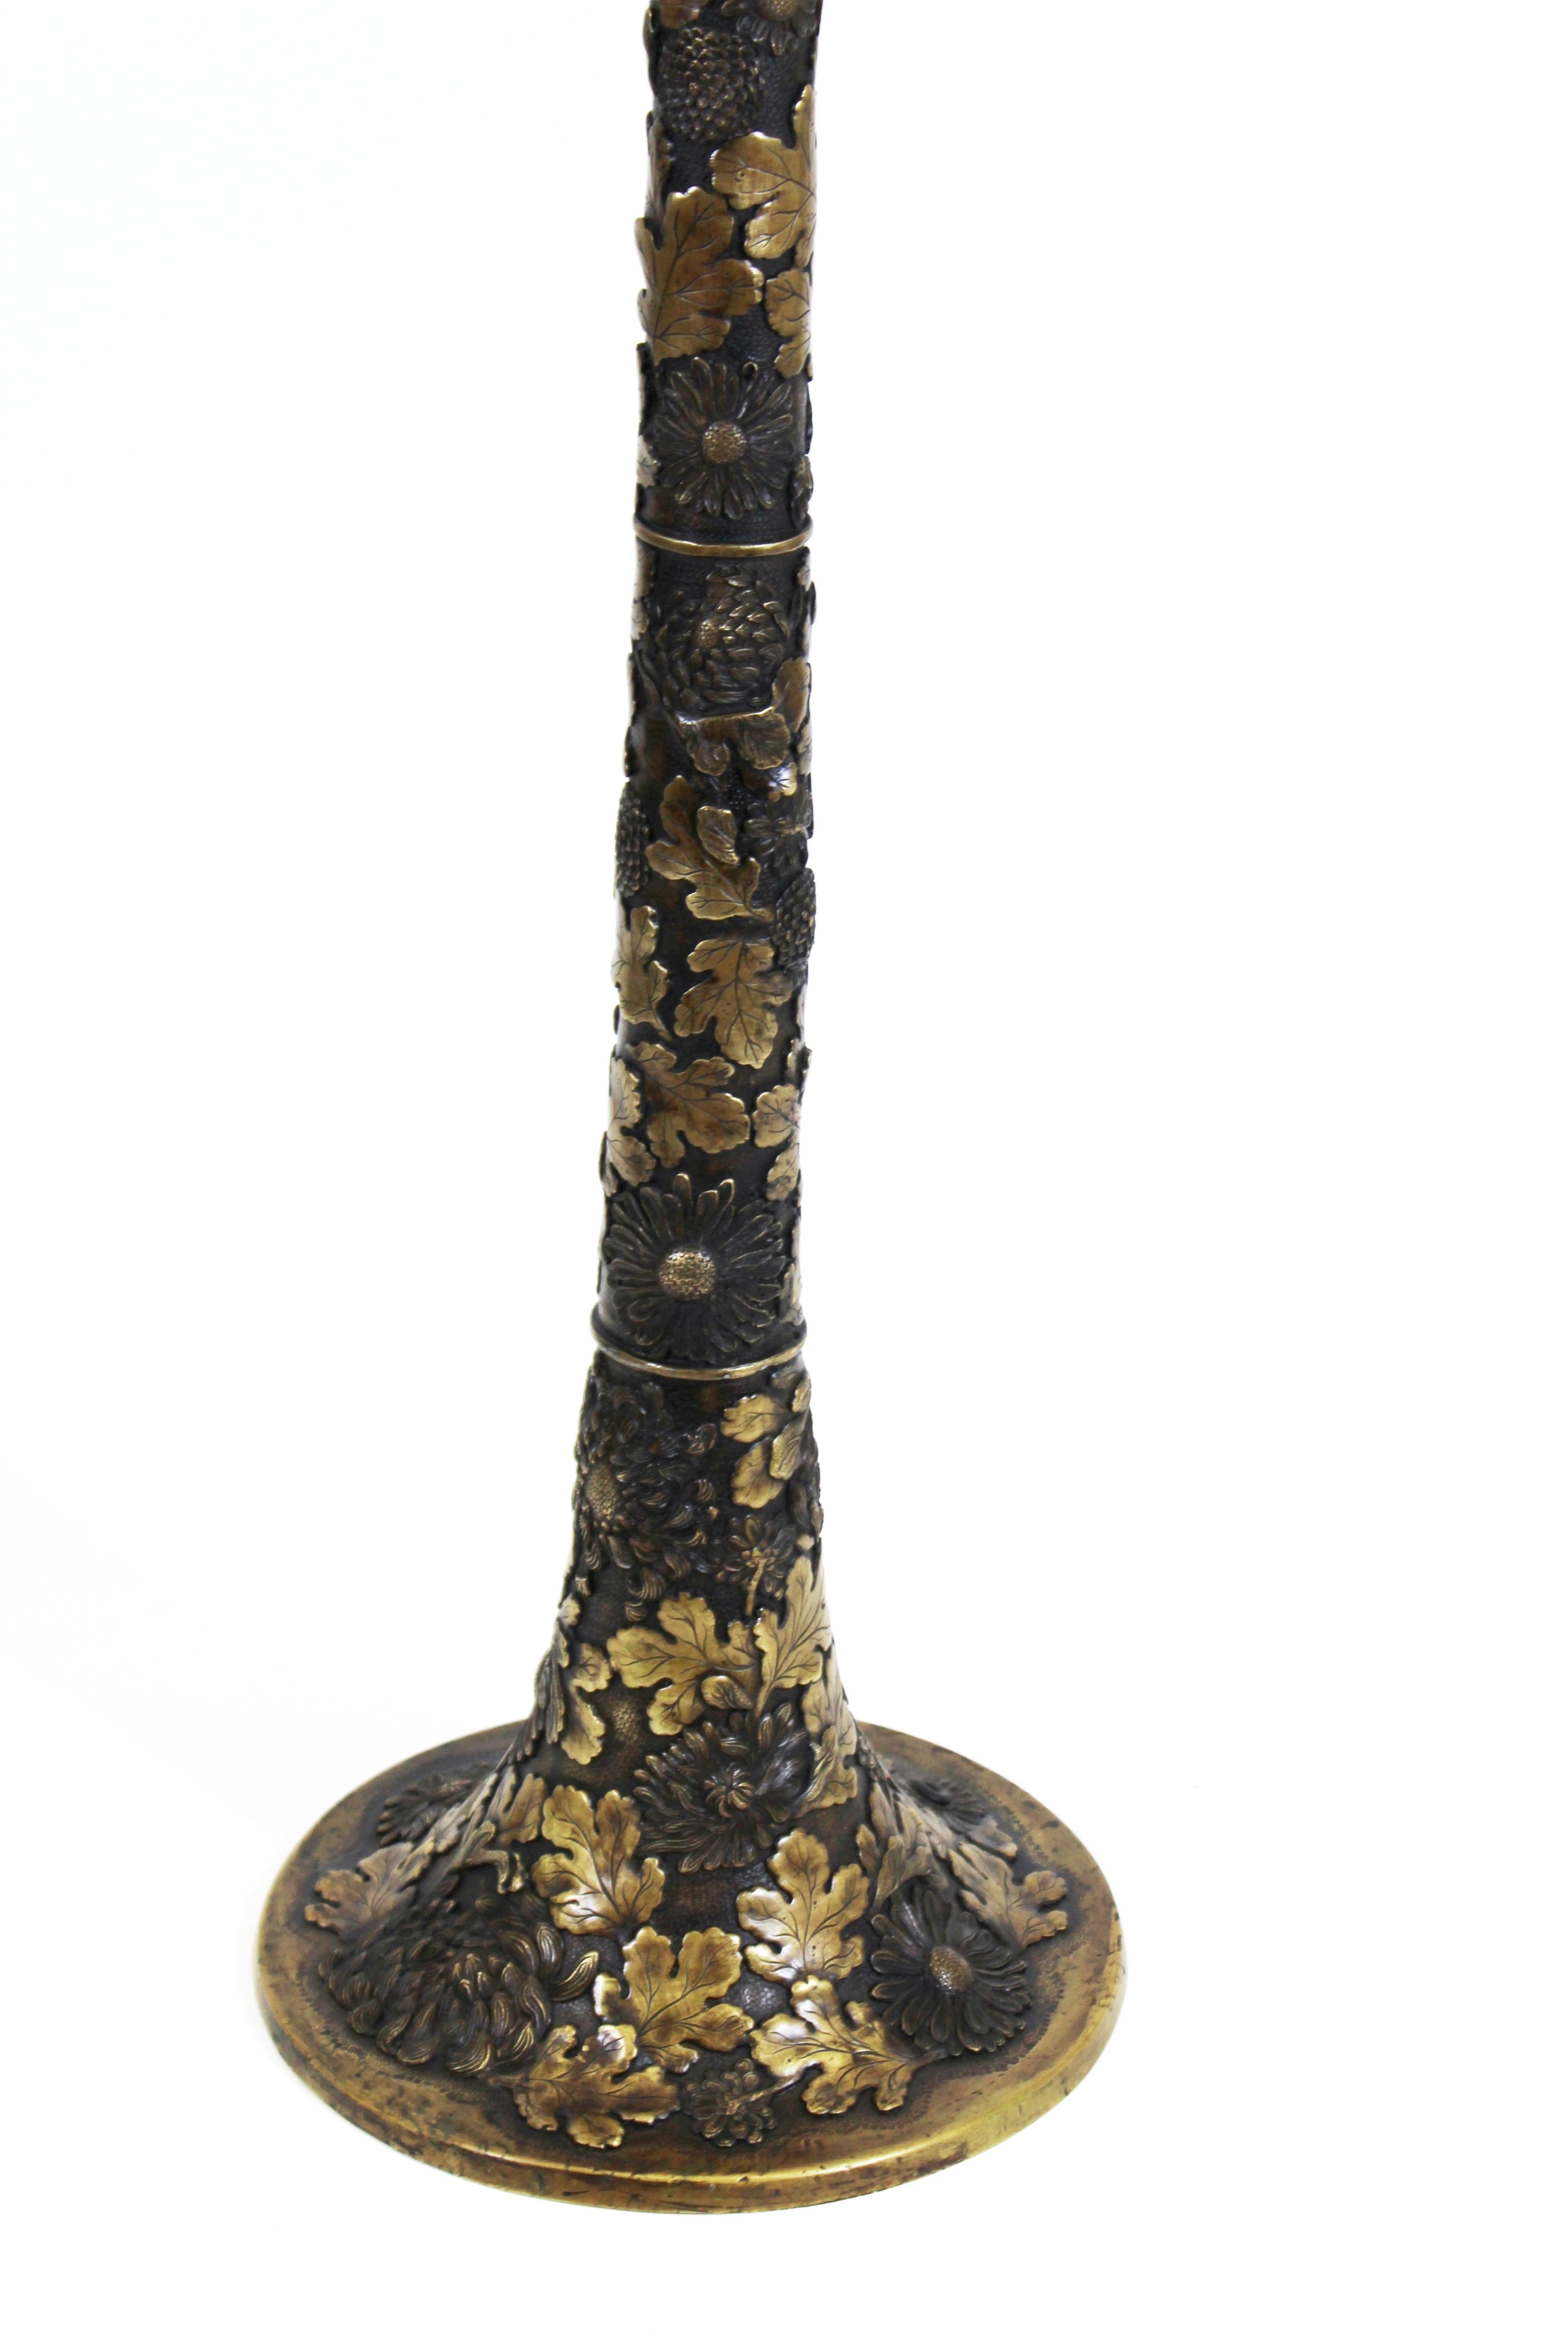 Lampe de table Art Nouveau en bronze de la période Taisho, avec un motif floral complexe de chrysanthèmes et de feuilles de chêne. Le chrysanthème est l'un des symboles les plus importants de la culture japonaise et représente le pays ainsi que le